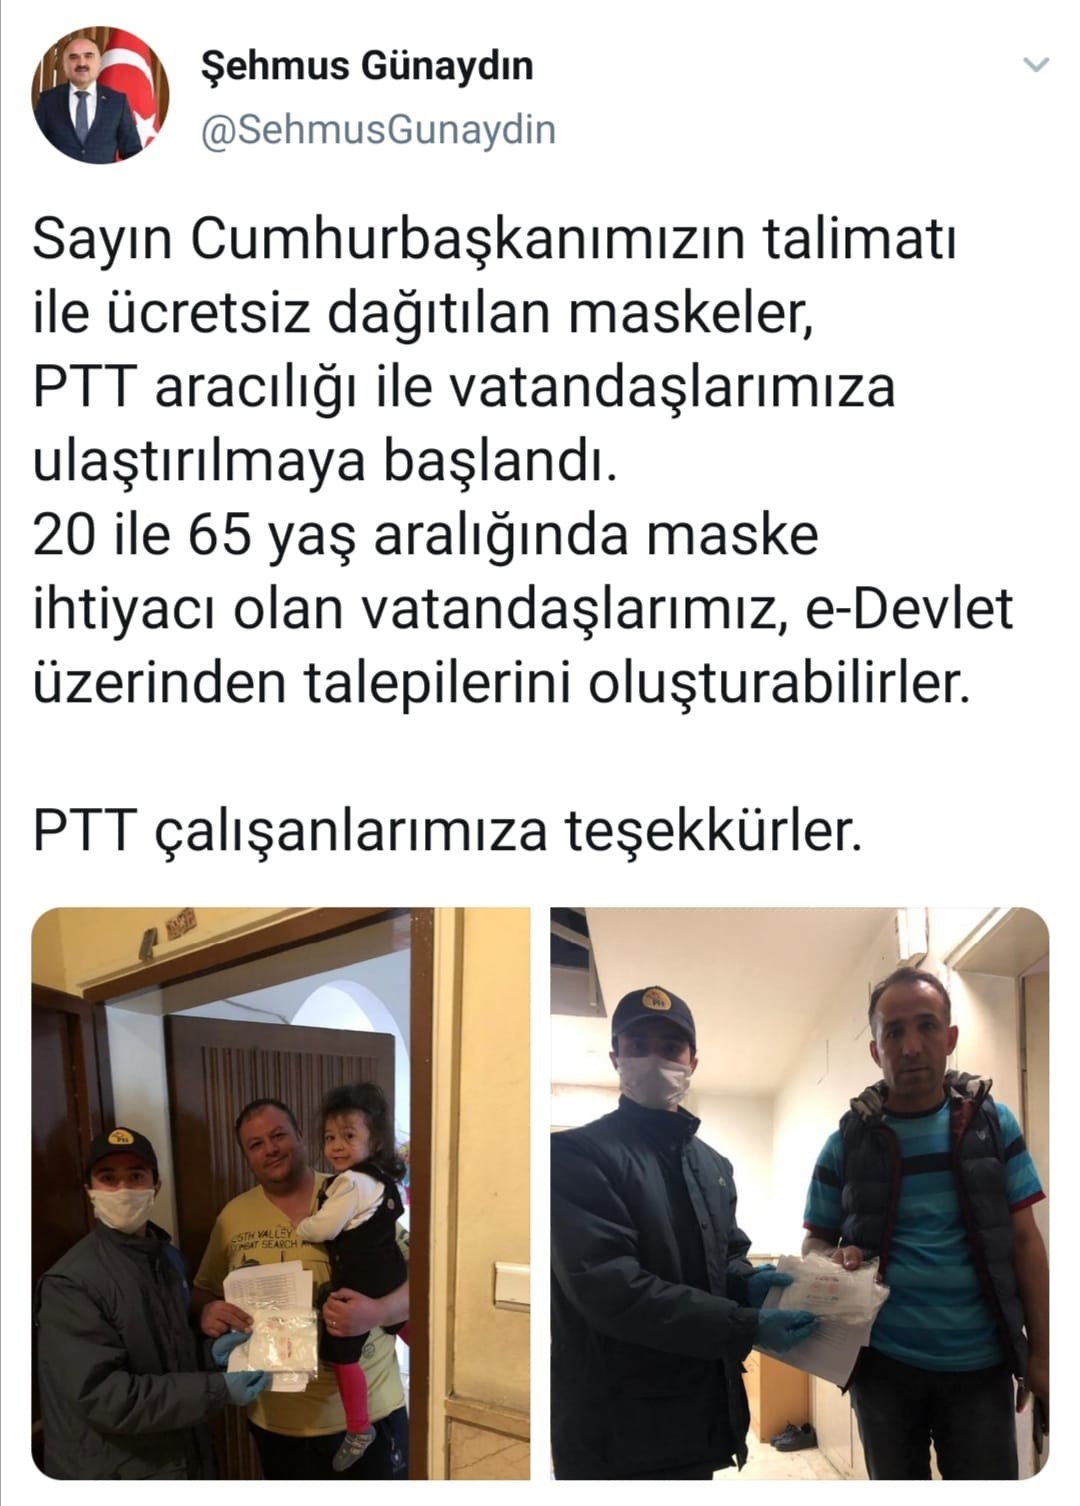 Ücretsiz maskeler Kayseri’de vatandaşlara ulaştırılıyor